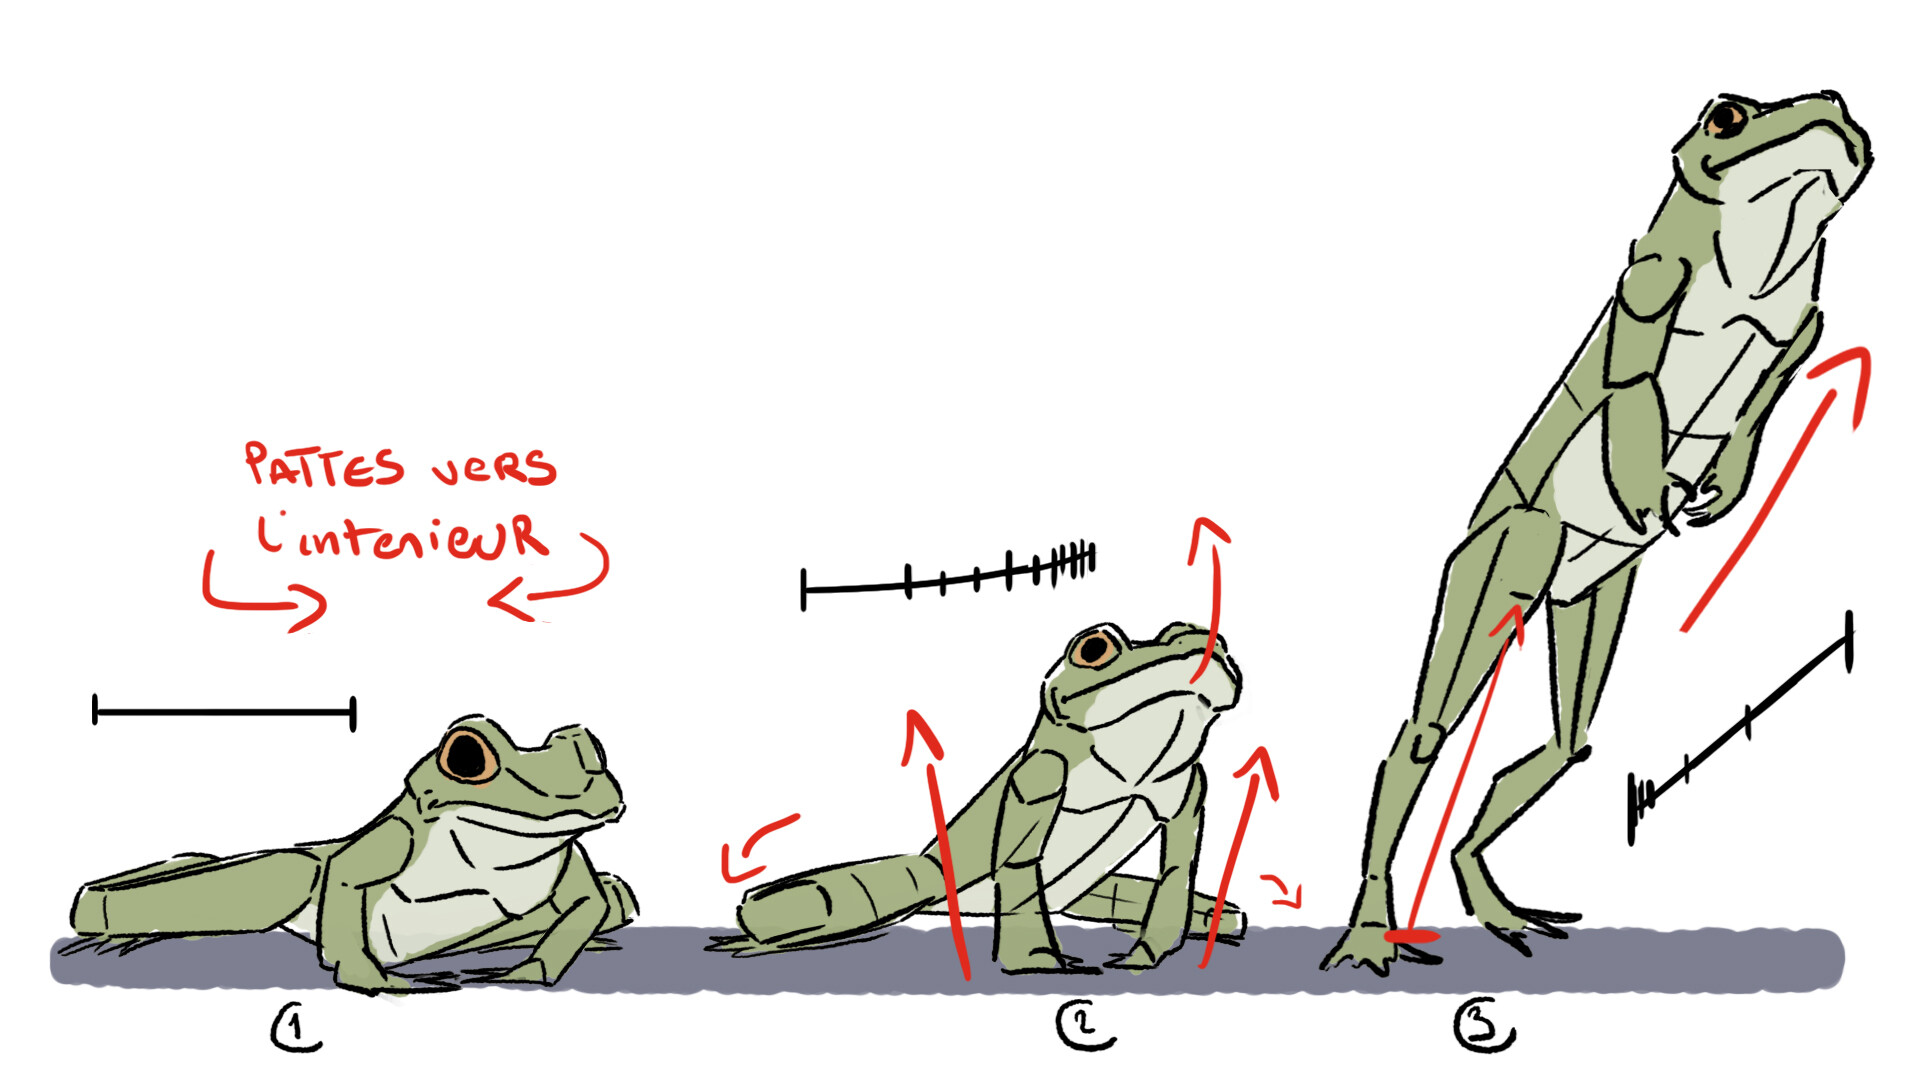 ArtStation - Animation Jumping Frog